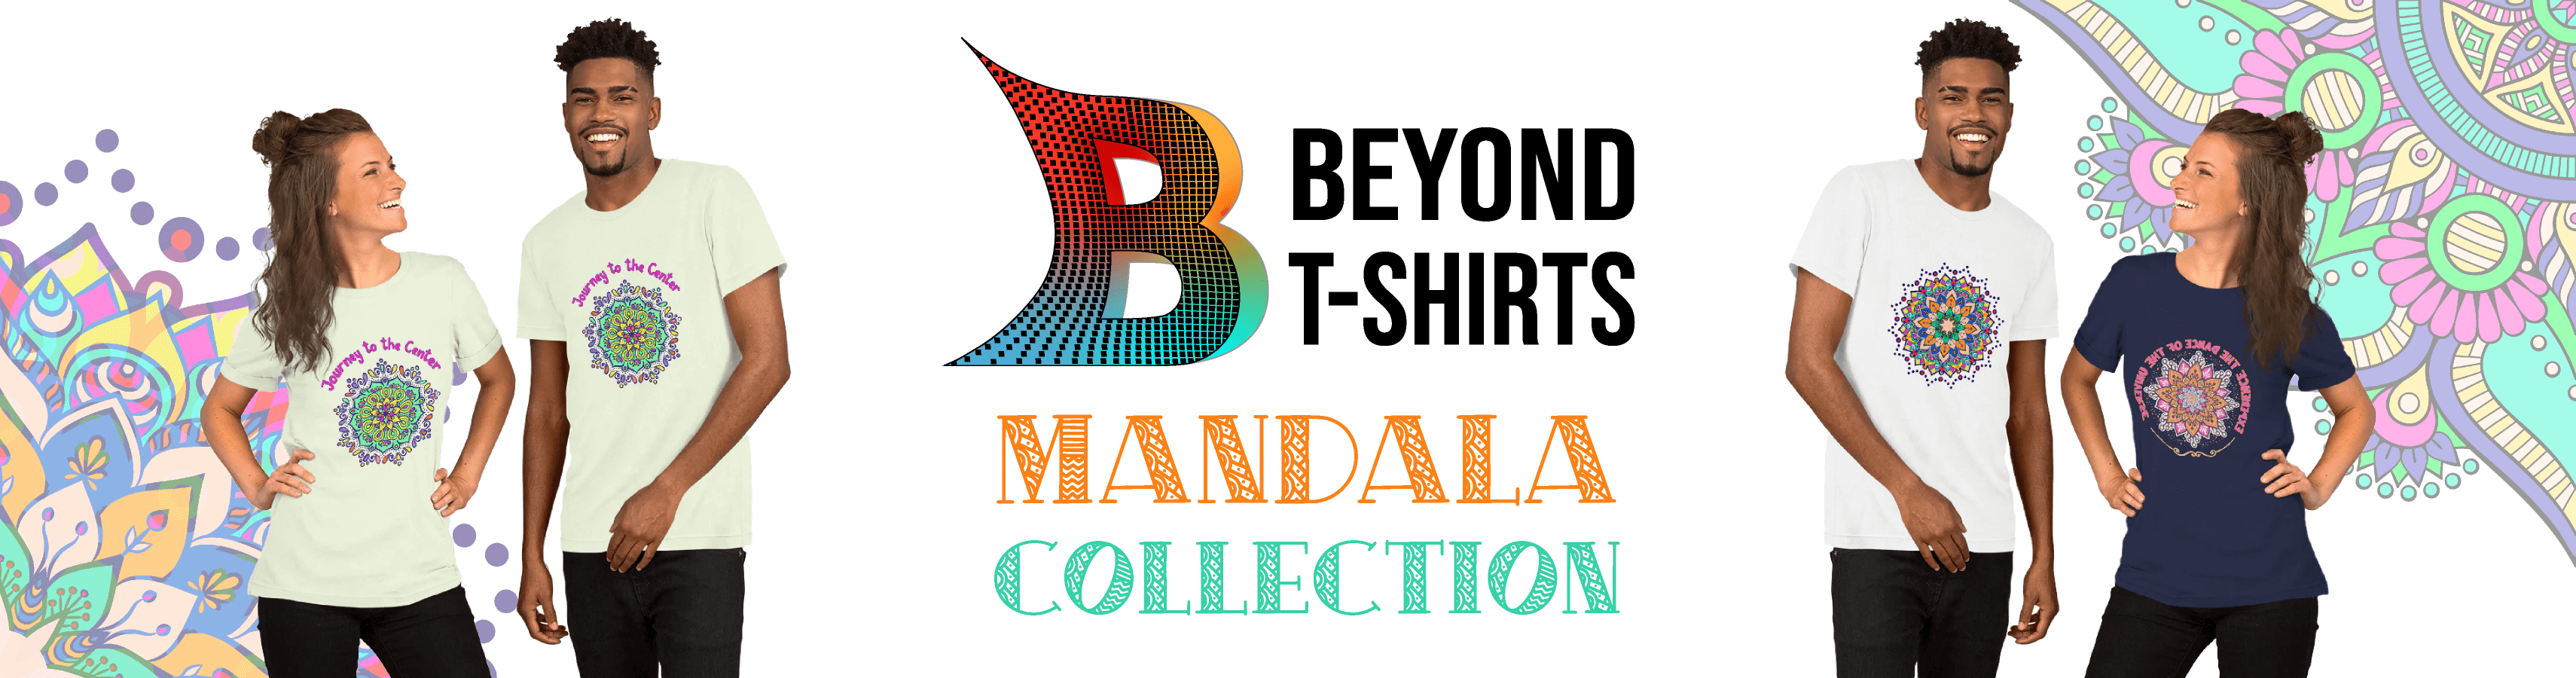 Beyond T-shirts